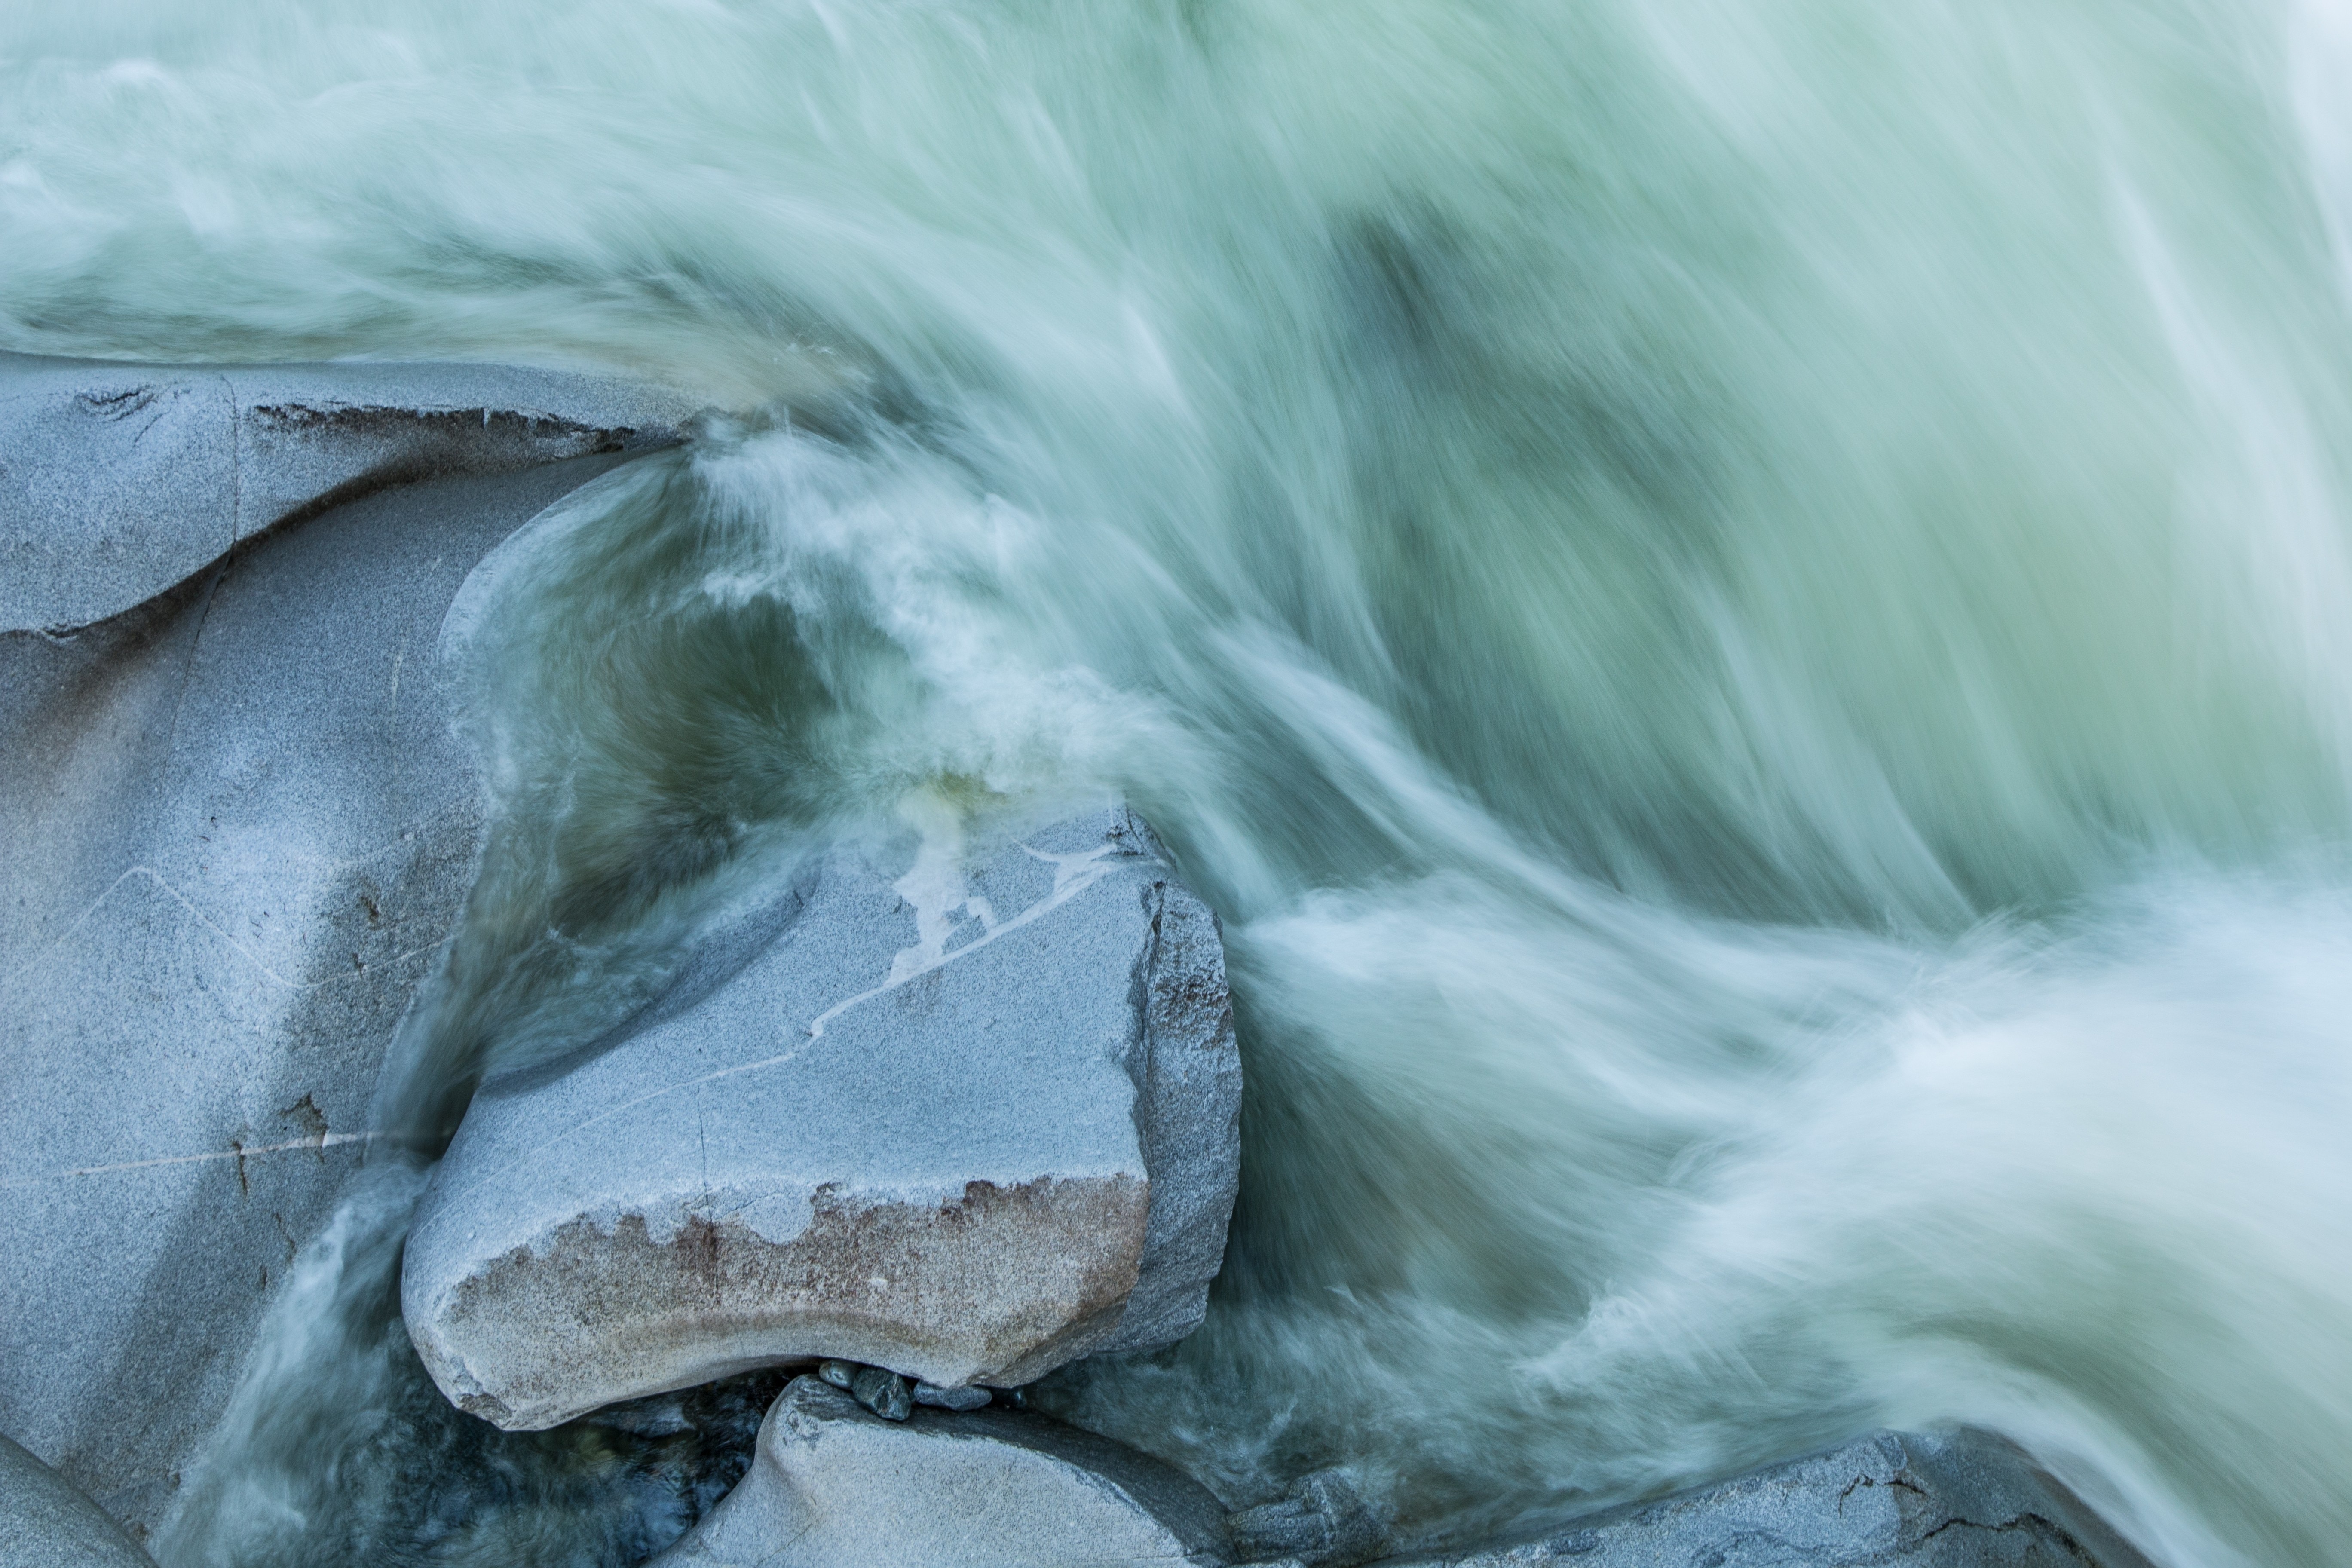 water flow on rocks